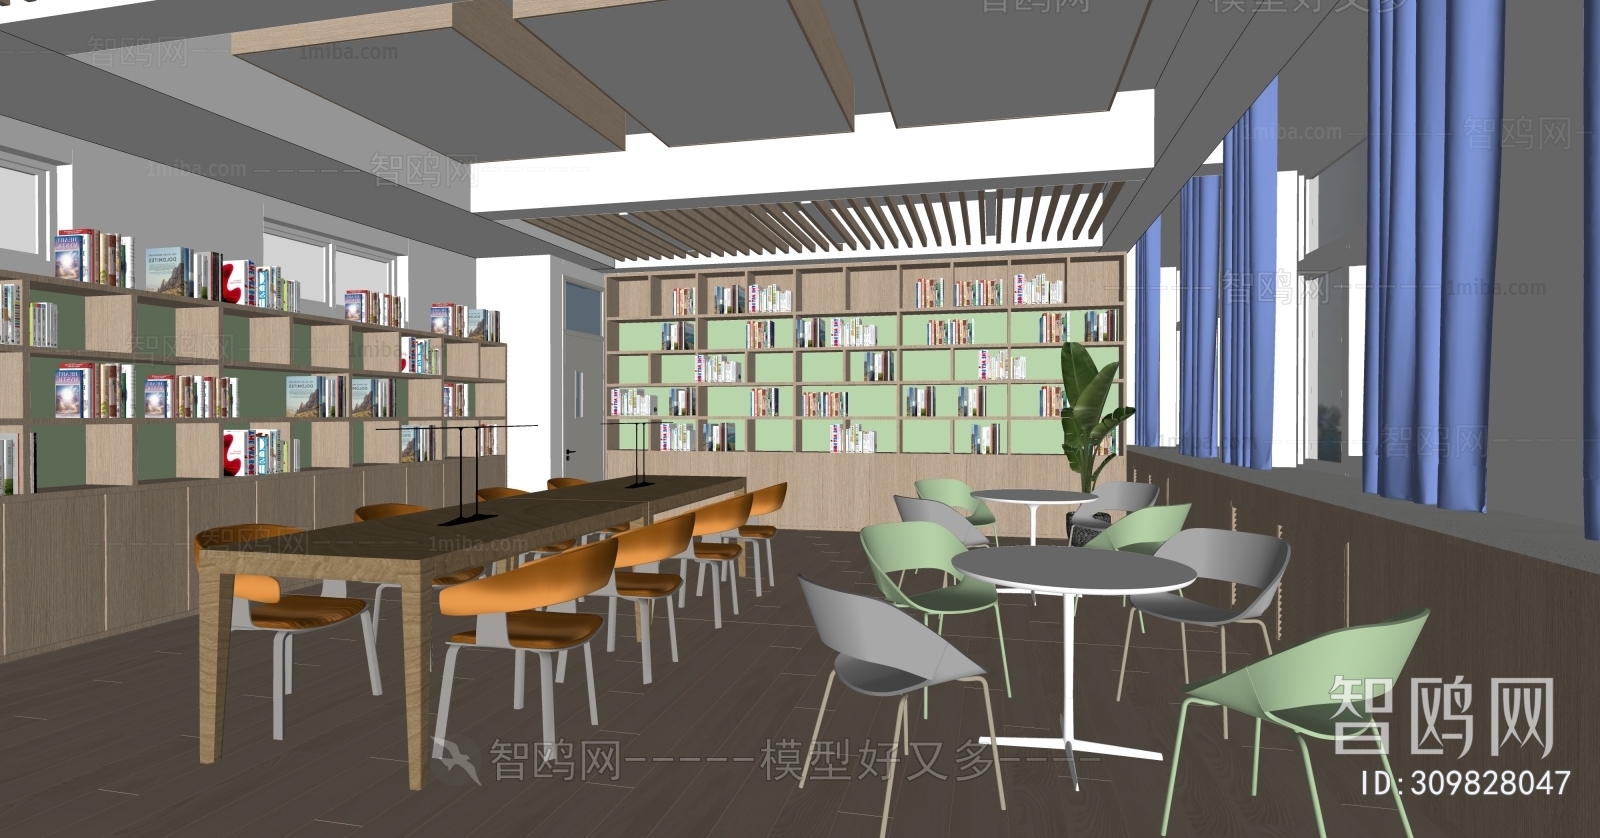 现代图书馆 阅览室3D模型下载